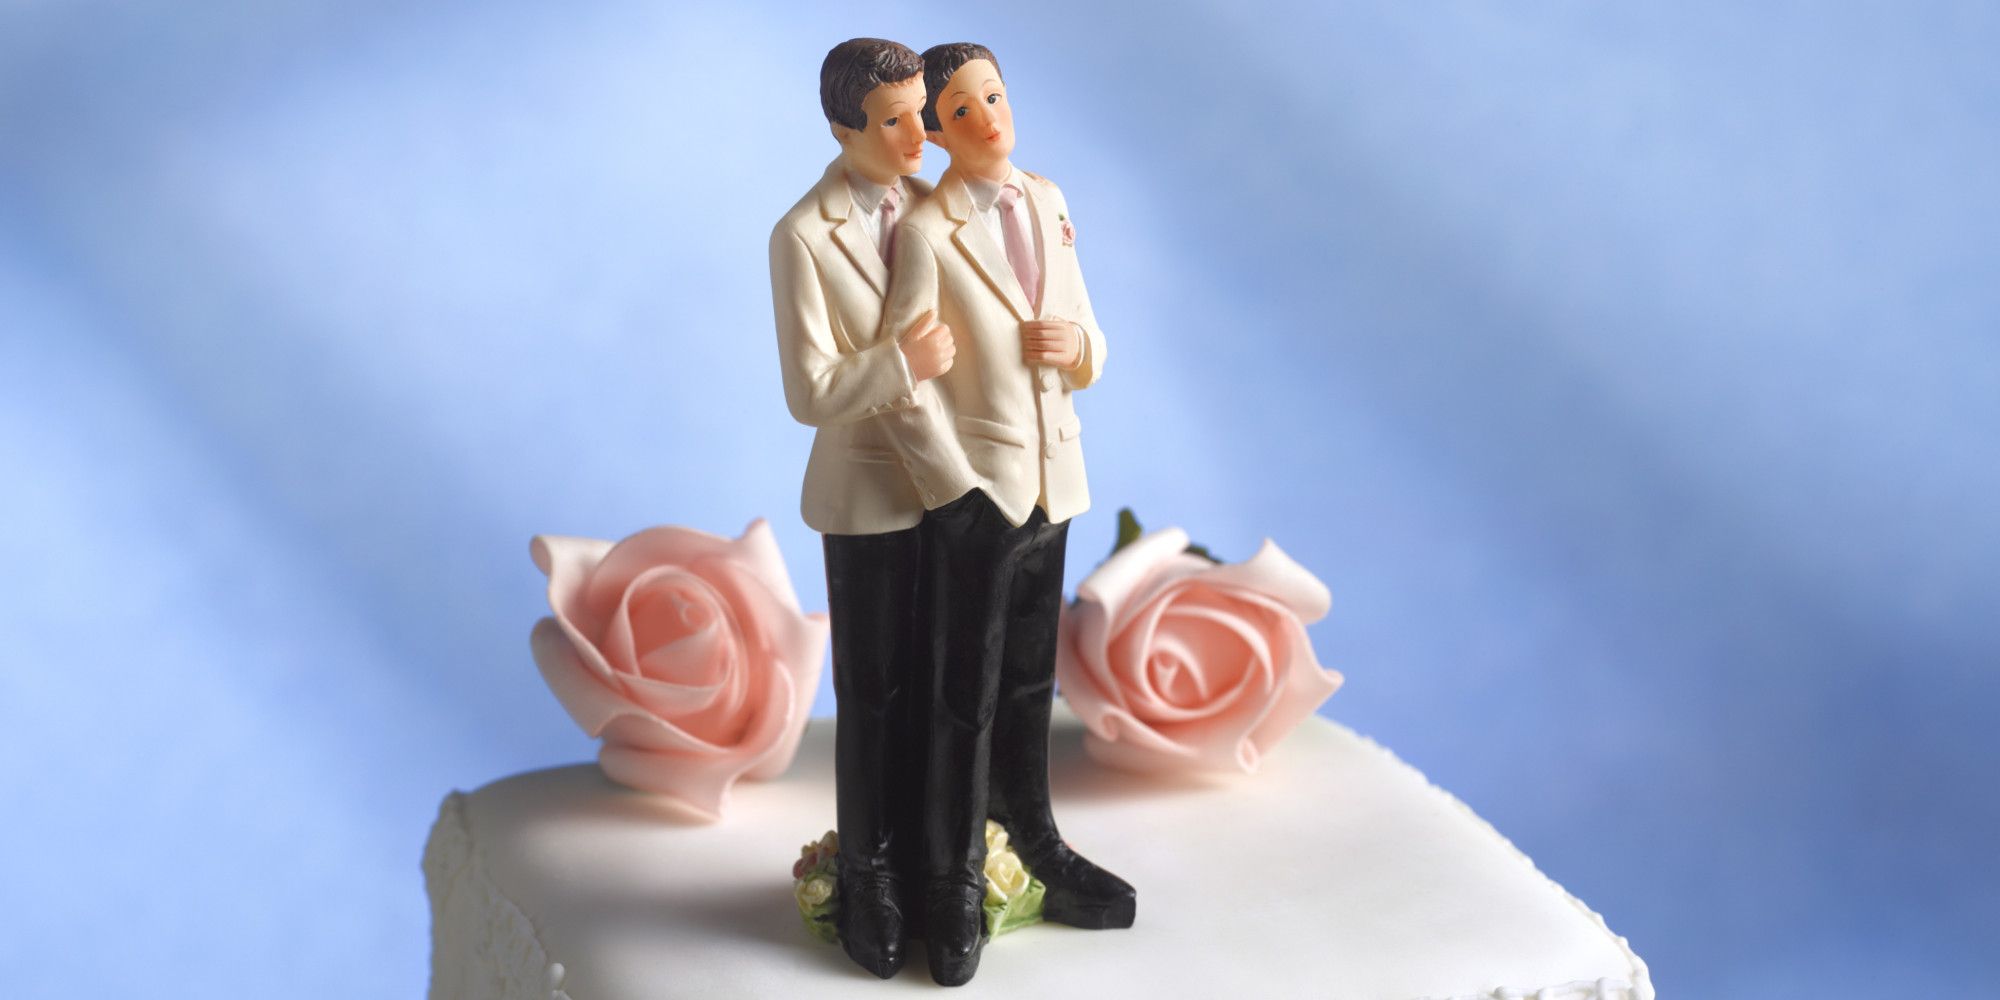 Wedding cake for a gay wedding